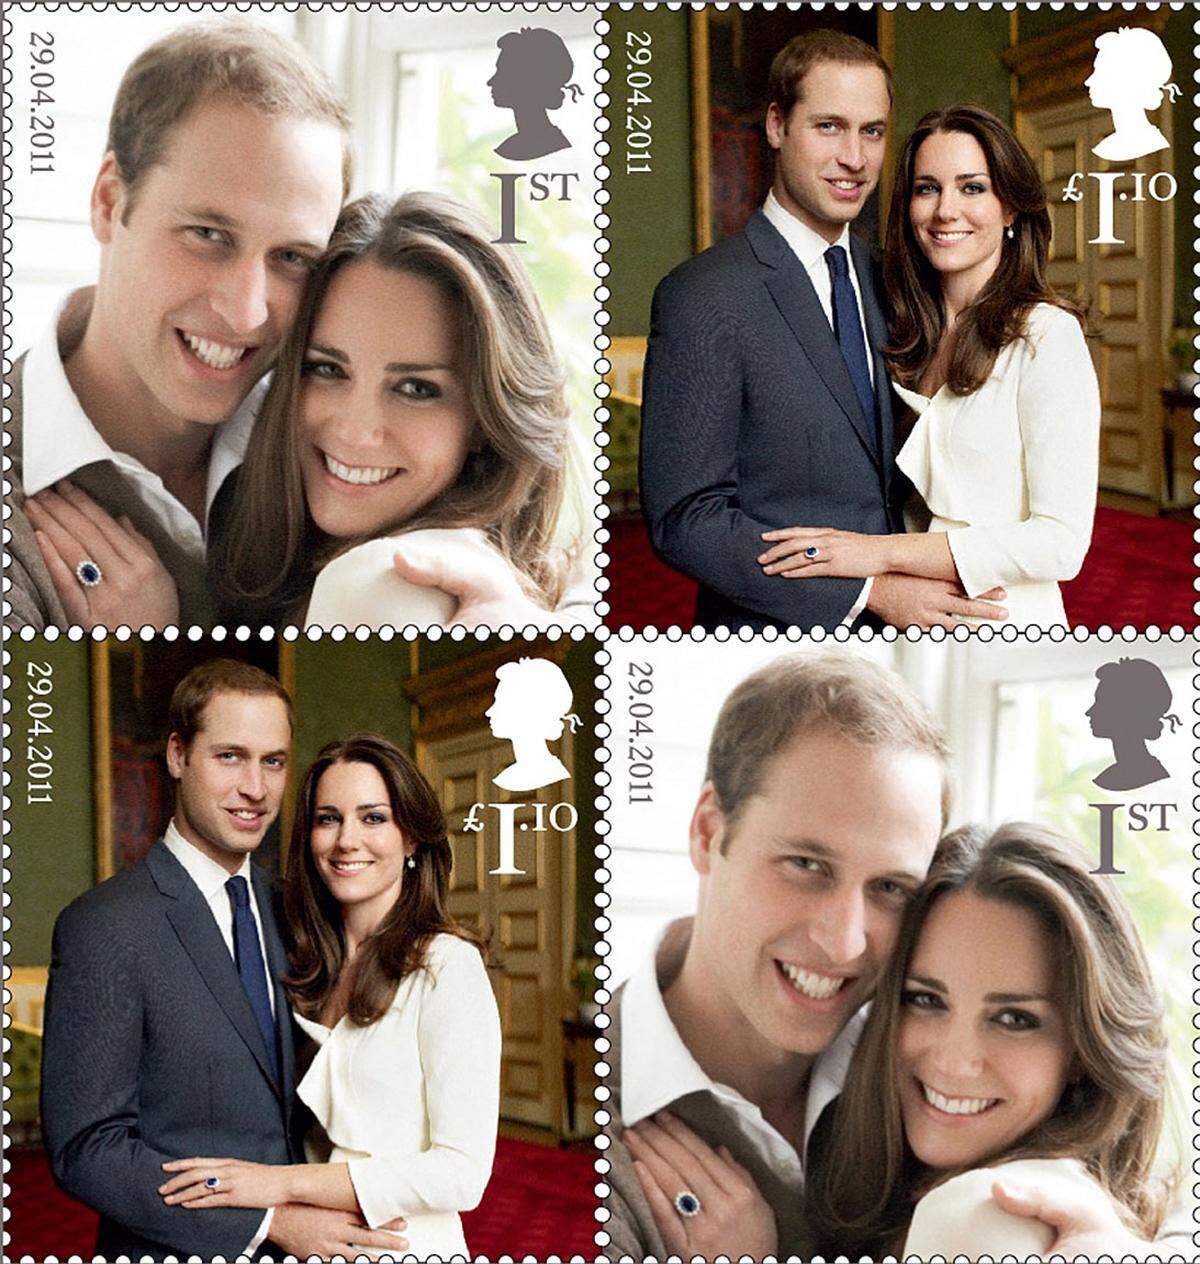 Besonderes gibt's anlässlich der Hochzeit auch bei der Post: Die Royal Mail lässt Sonderbriefmarken mit den beiden offiziellen Verlobungsfotos des Paares drucken. Außer den Bildern sollen auf den Briefmarken demnach auch das Datum des Hochzeitstags am 29. April und das Konterfei von Queen Elizabeth II. aufgedruckt sein.